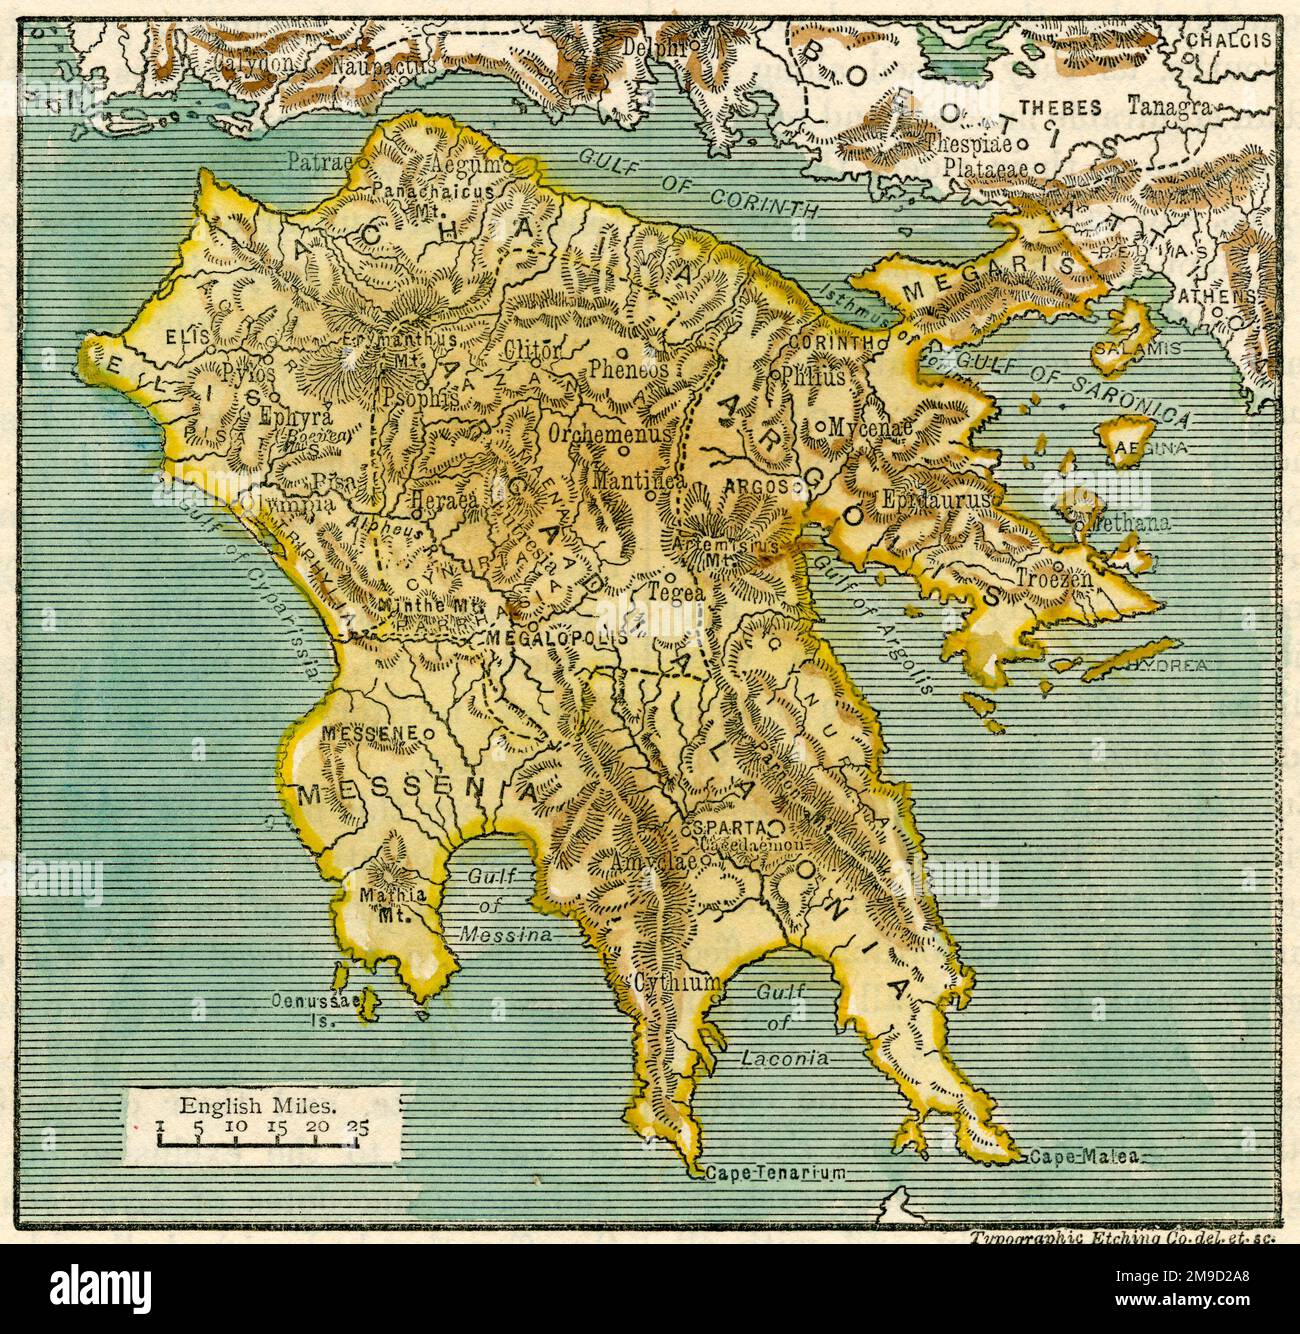 Mappa del Peloponneso antico Foto Stock